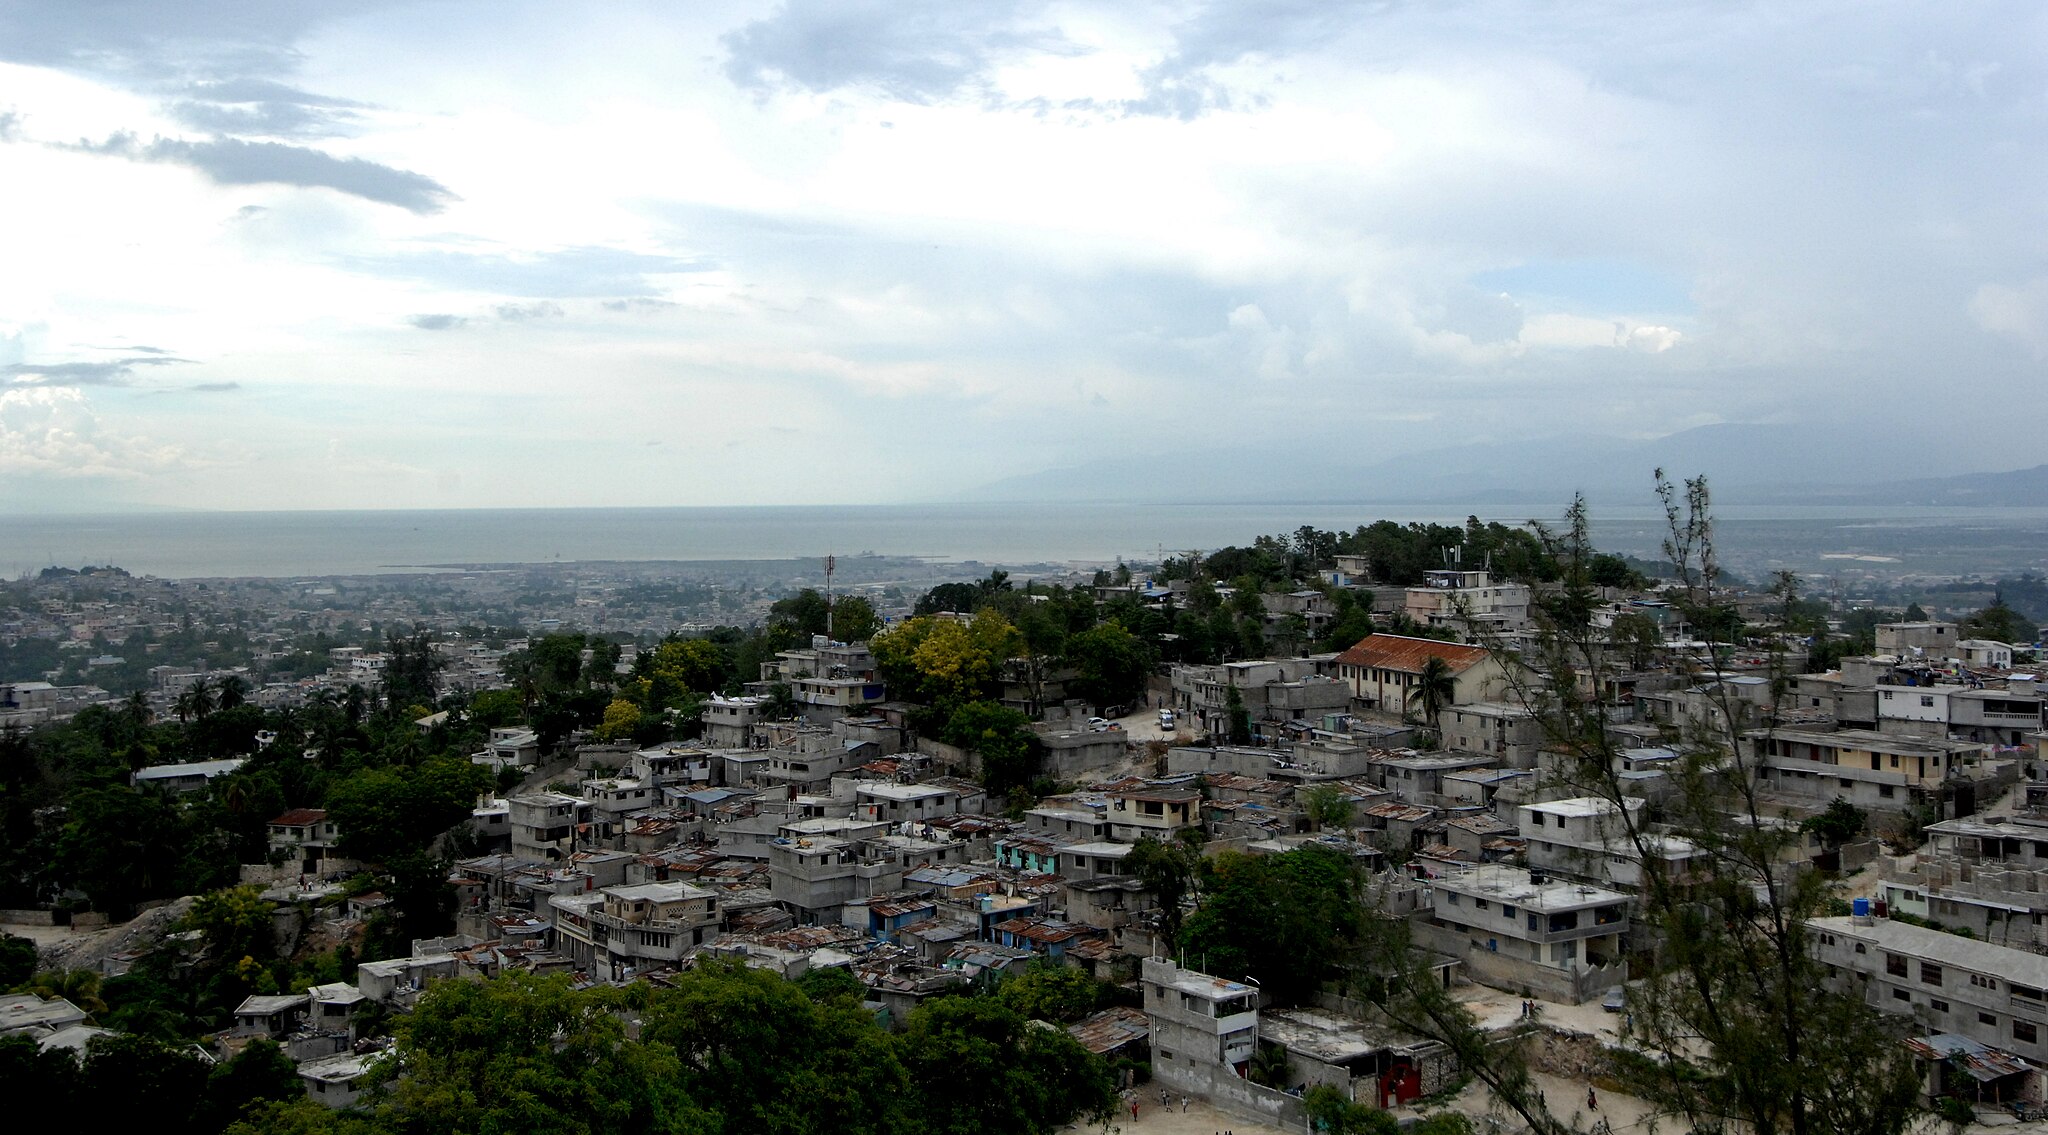 Haiti gang violence claims 1,500 lives so far this year: UN